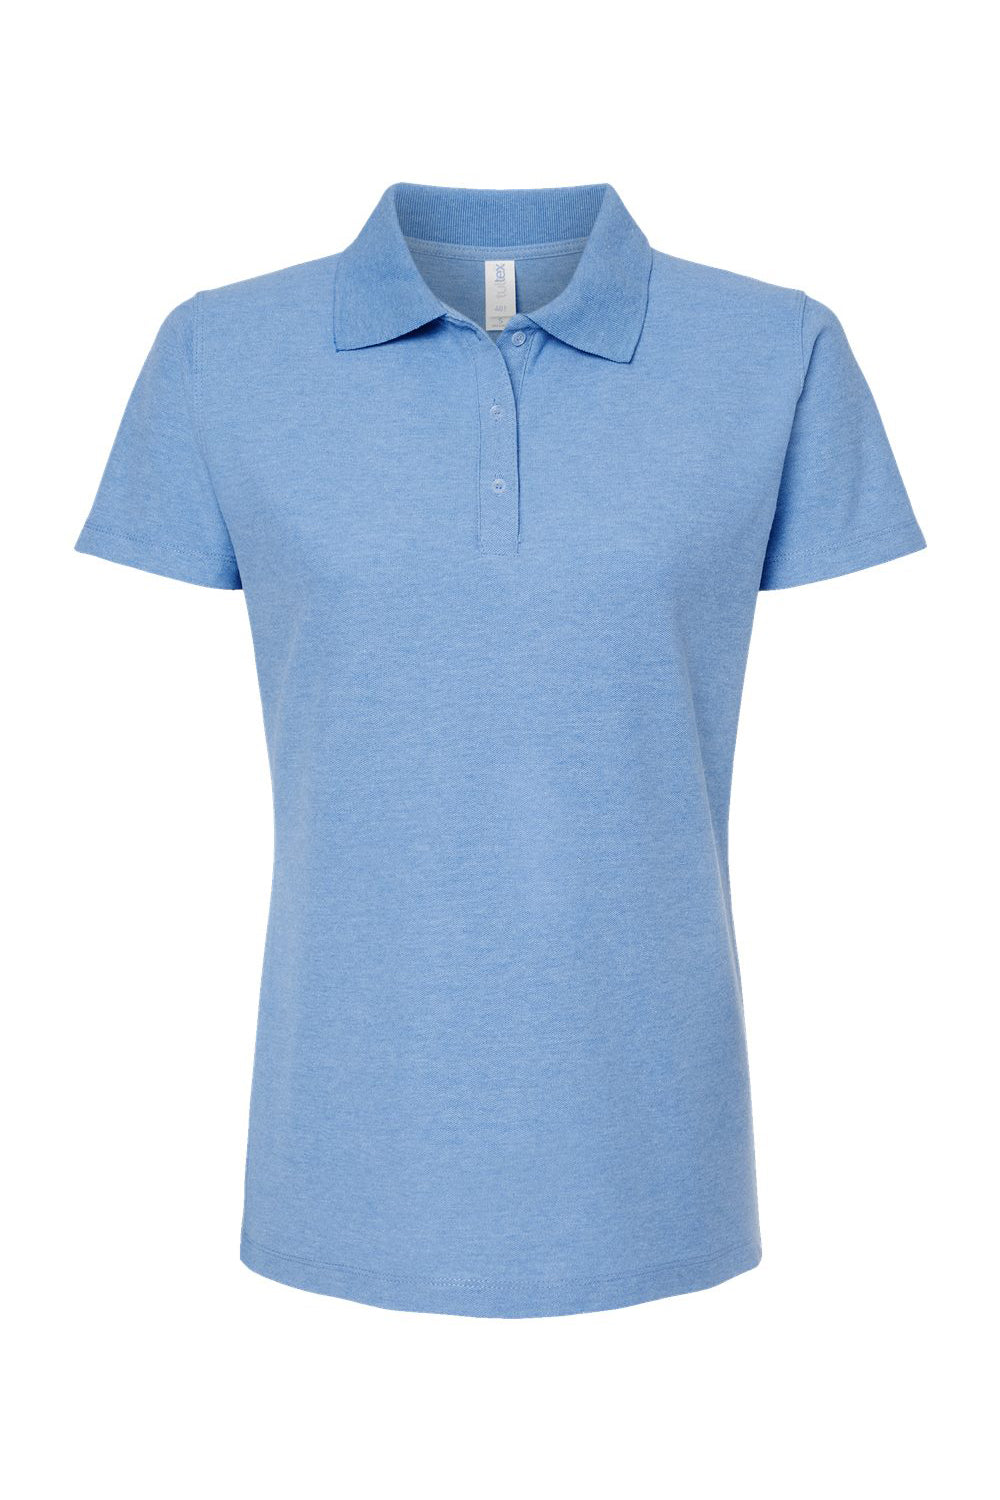 Tultex 401 Womens Sport Shirt Sleeve Polo Shirt Heather Light Blue Flat Front